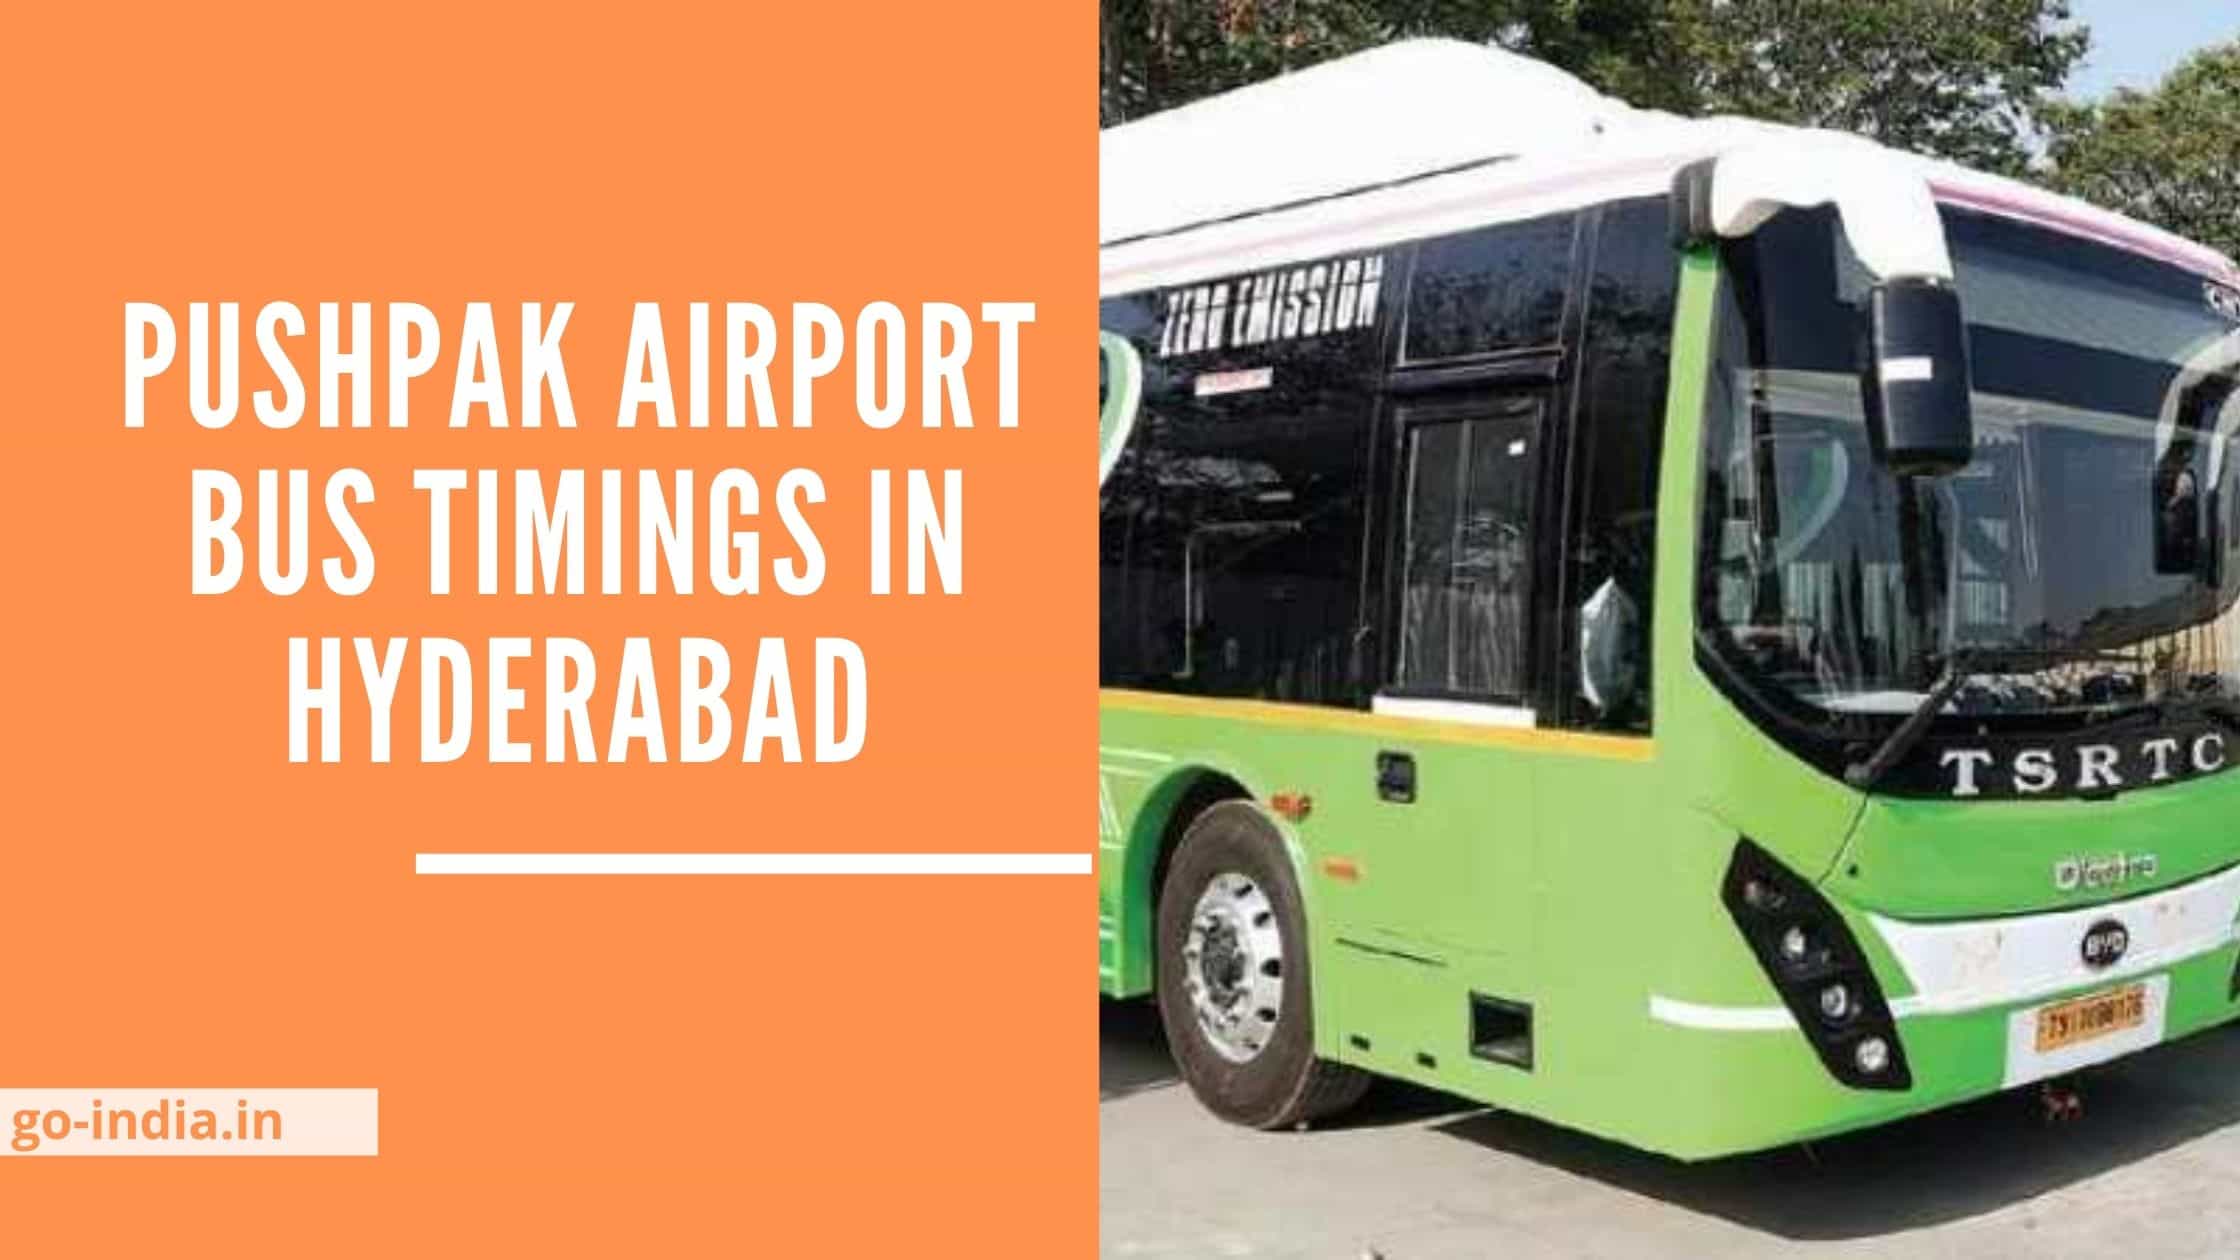 Pushpak Airport Bus Timings in Hyderabad